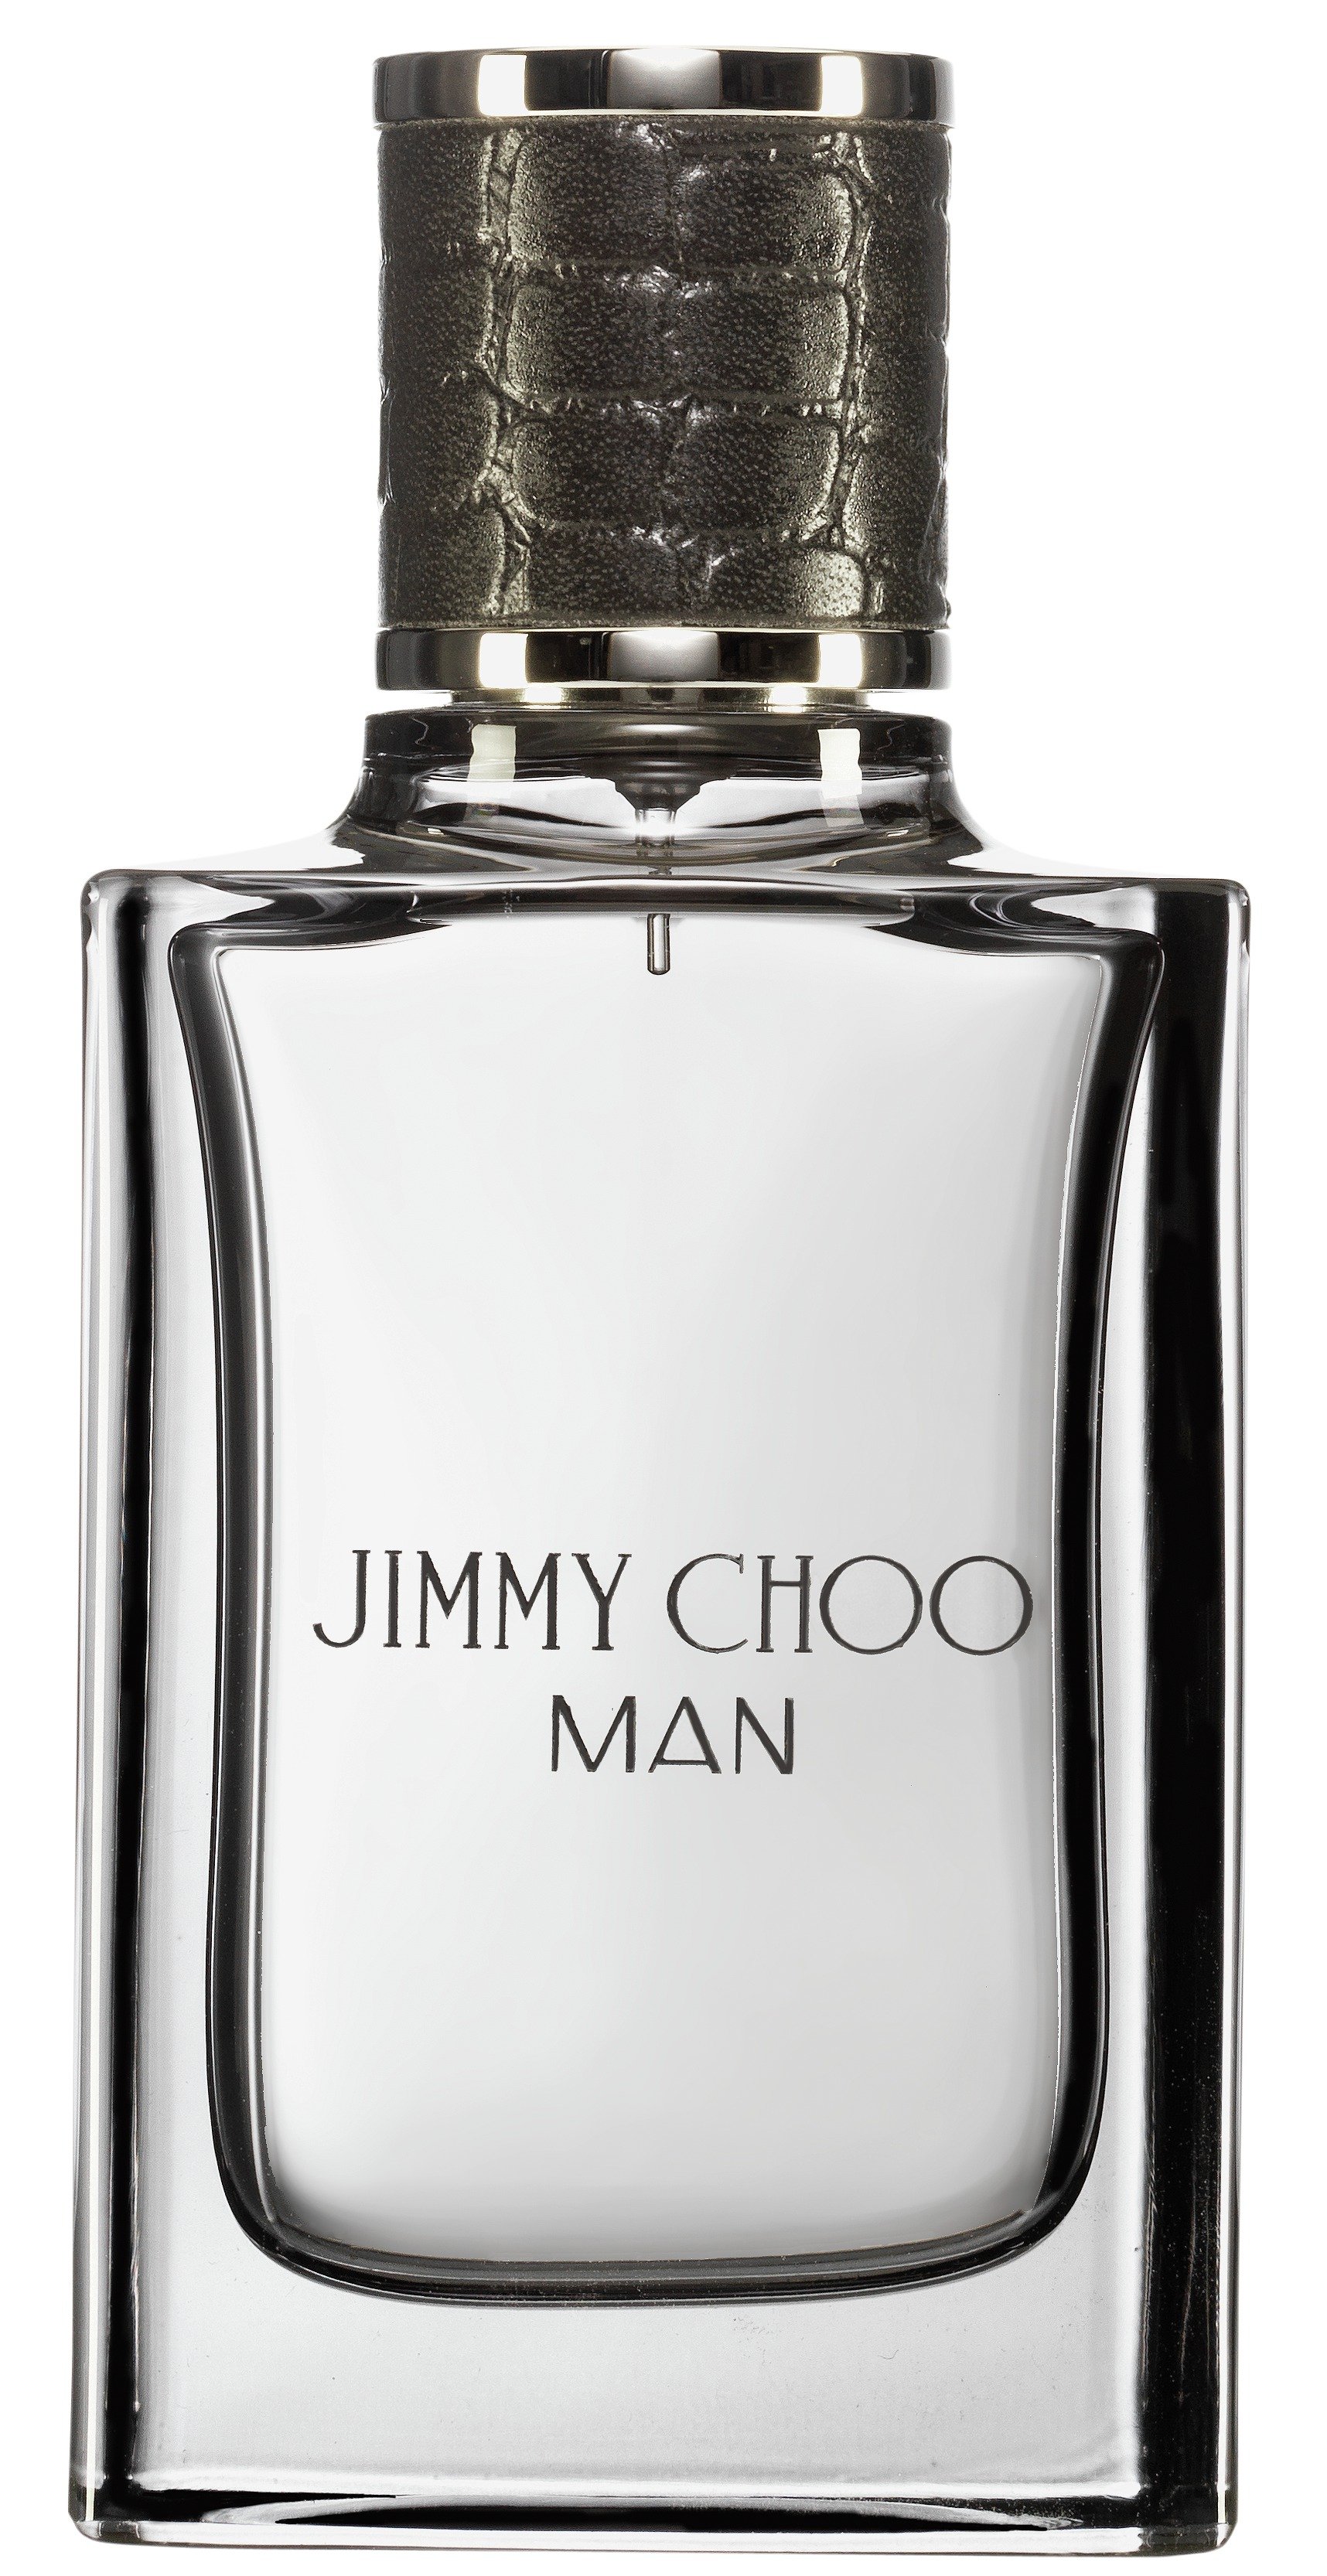 Jimmy Choo Man Eau de Toilette for Men - 30ml